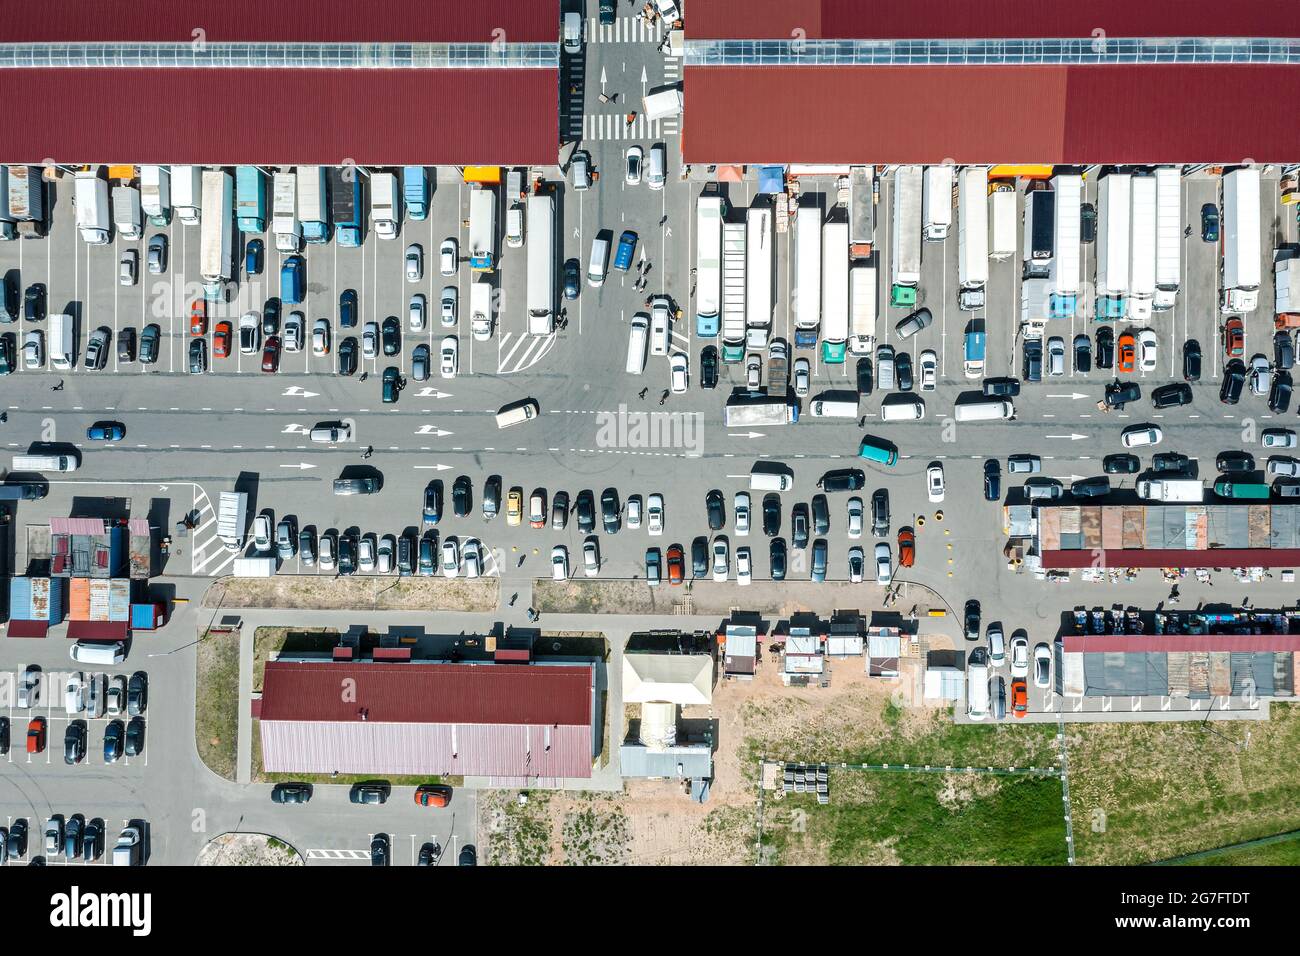 Obst- und Gemüsemarkt in Vorort mit vielen Autos und Lastwagen. Luftbild, Draufsicht. Stockfoto